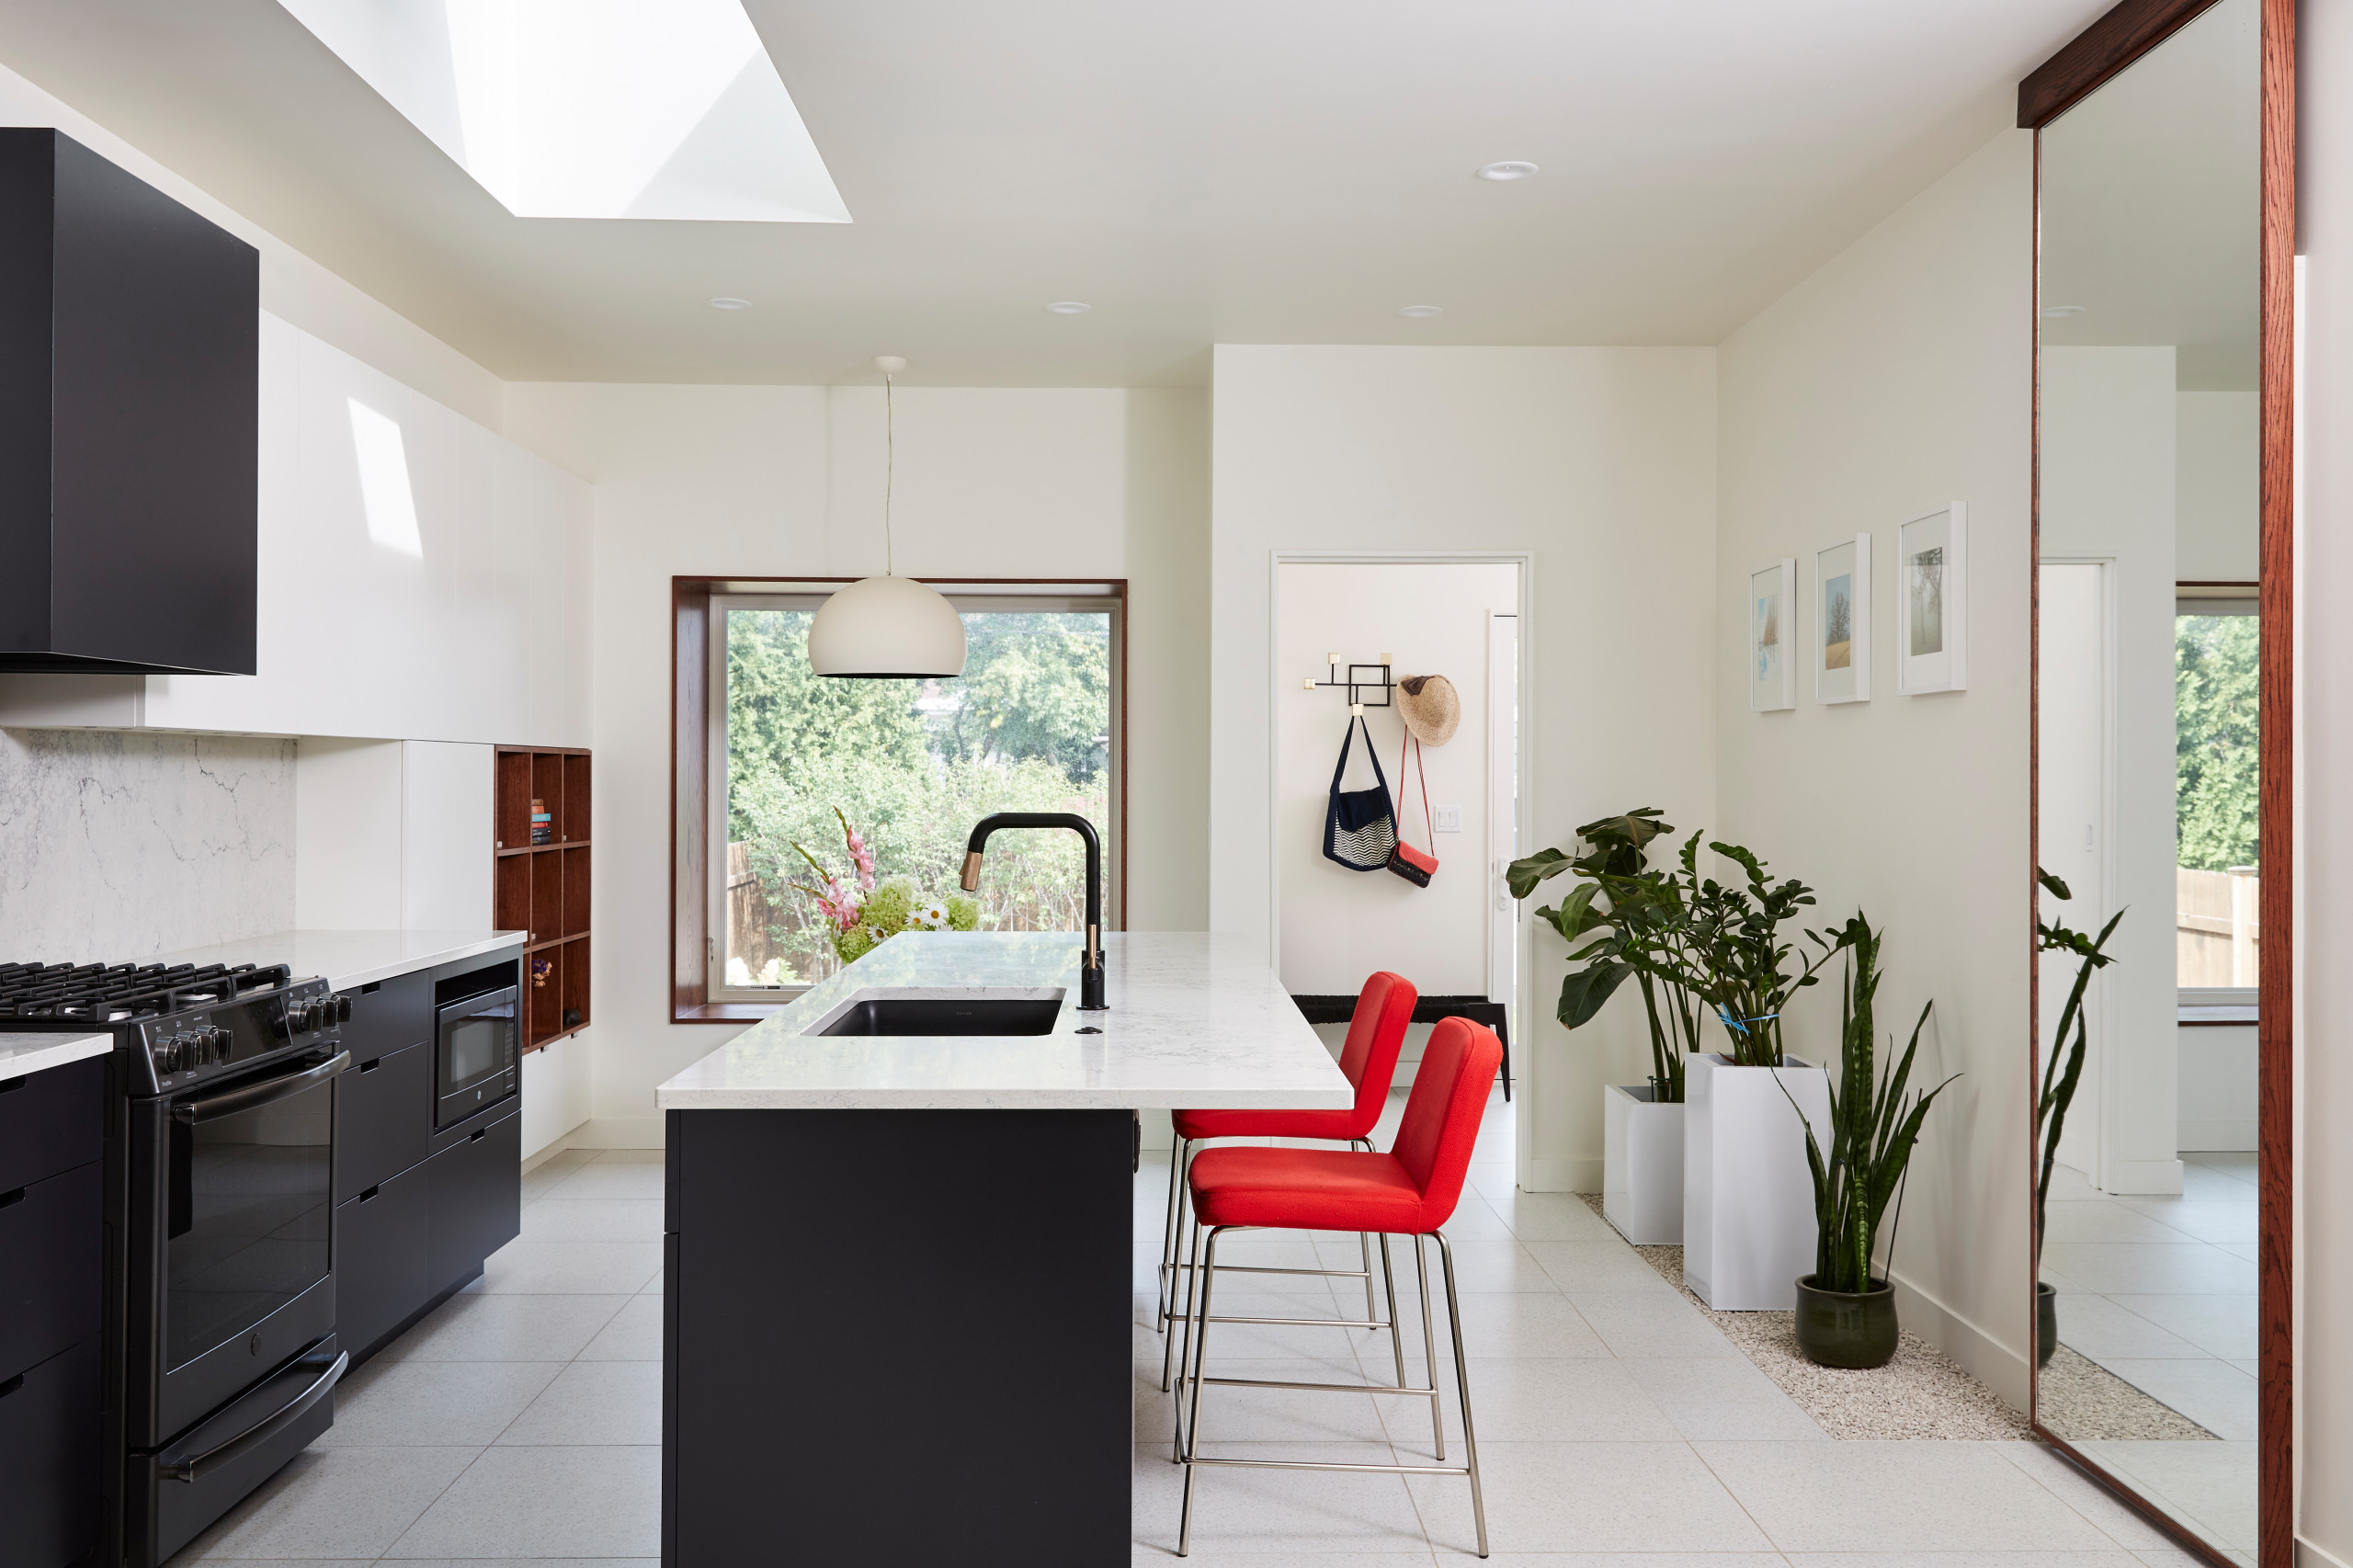 Fairmount Contemporary Home Addition